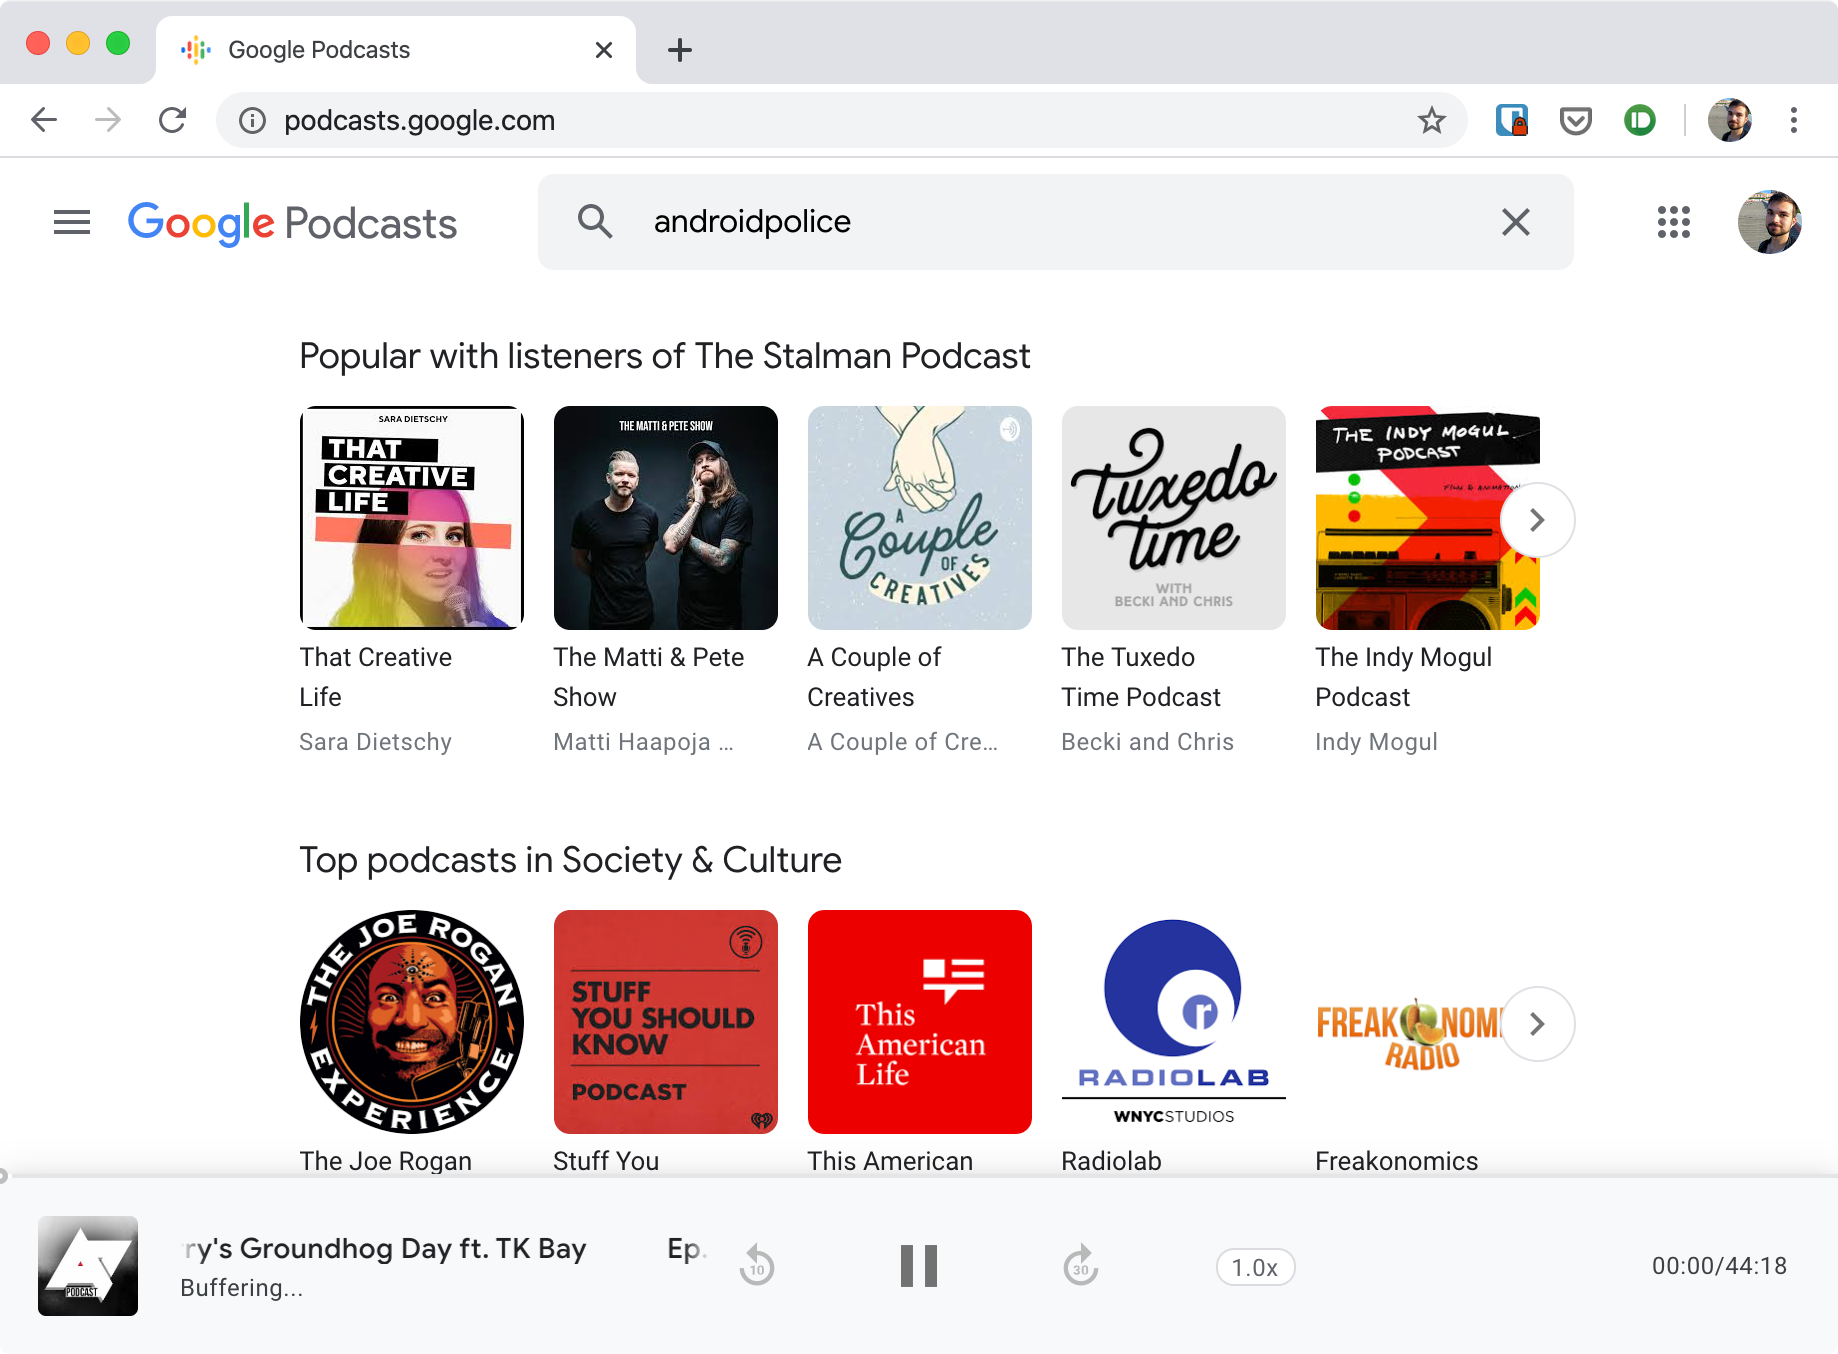 Captura de tela do Google Podcasts mostrando a tela inicial